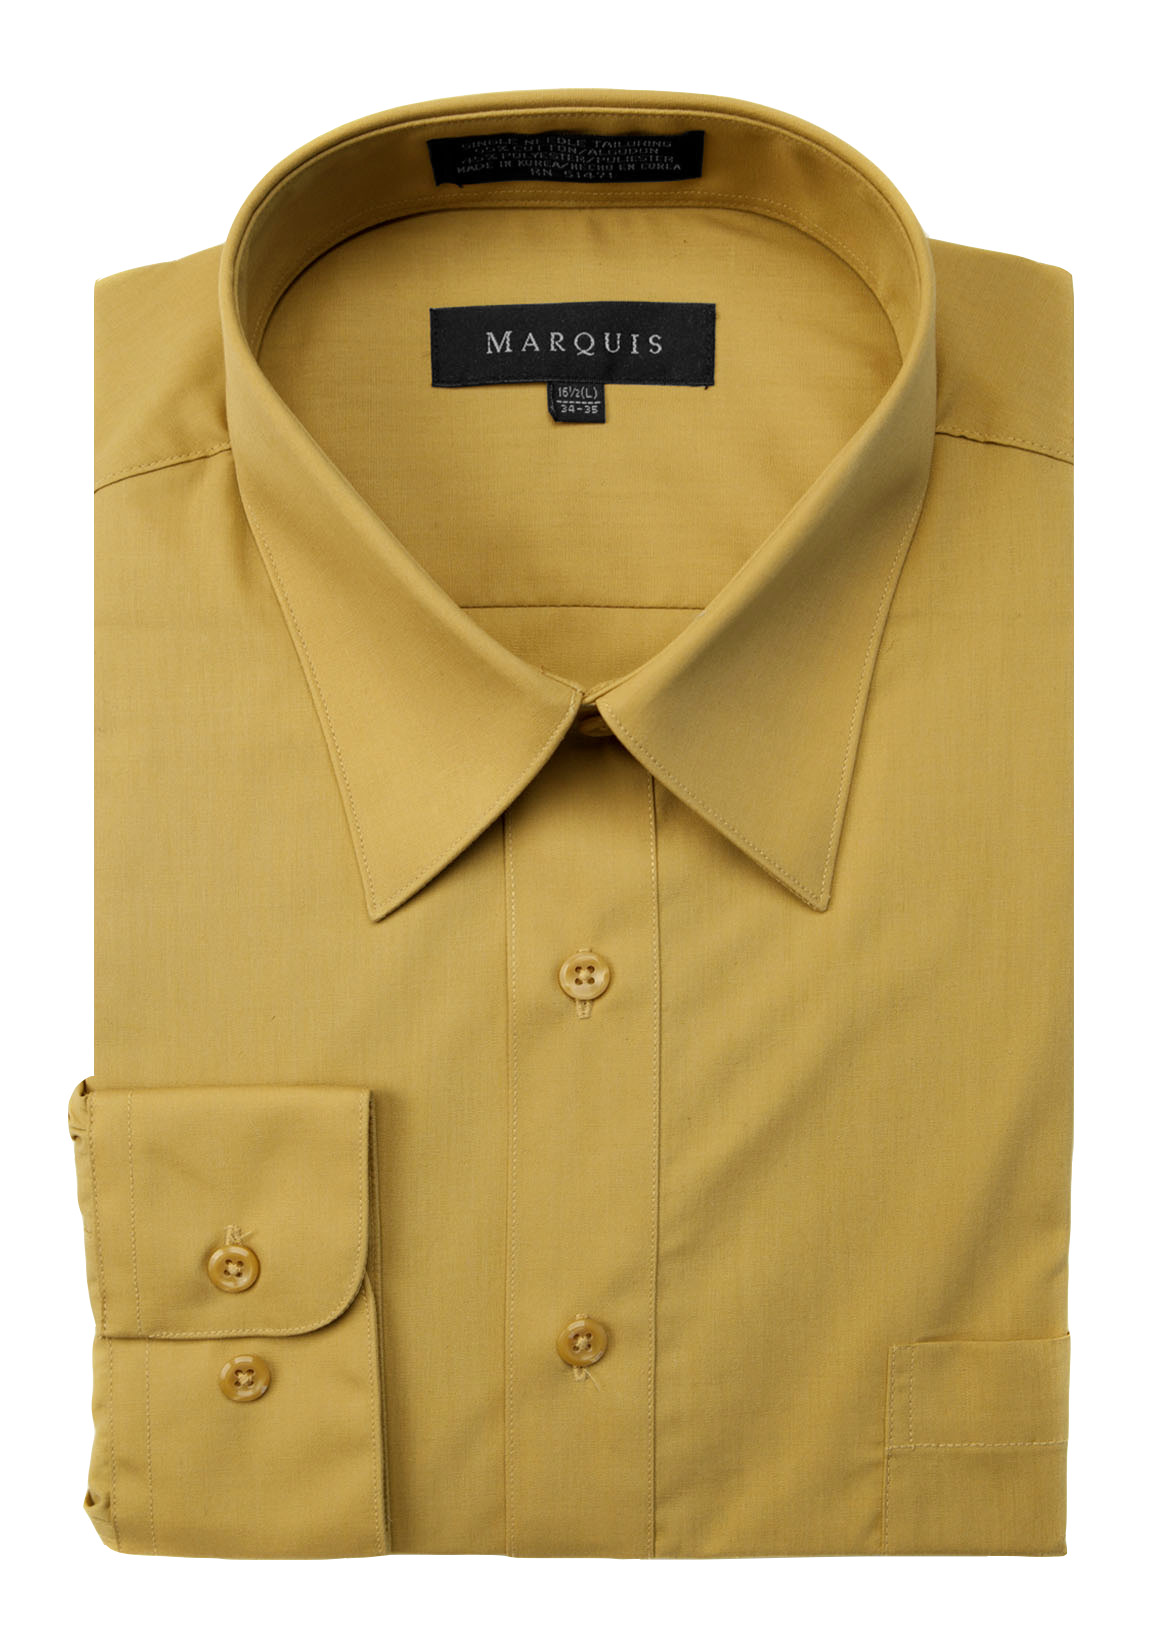 Marquis 009 Men's Cotton Blend Classic Fit Solid Button Down Dress Shirt Lilac 